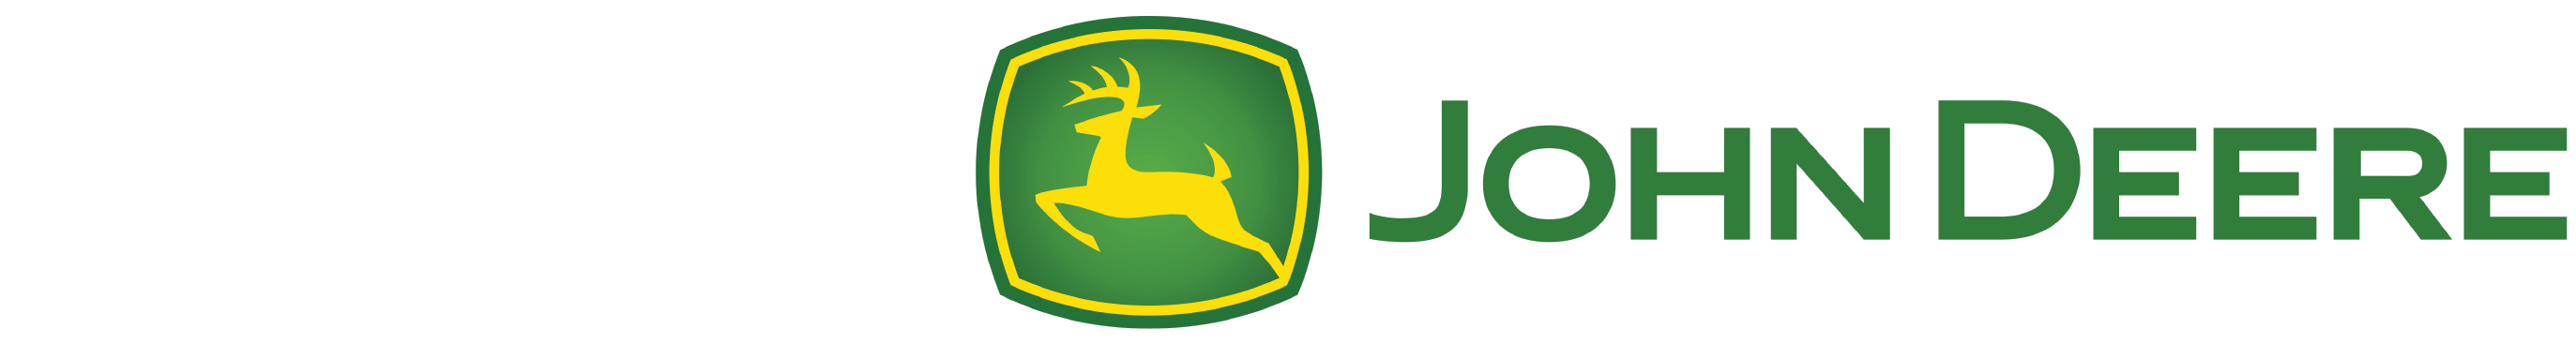 Small John Deere Logo - John Deere PNG Transparent John Deere.PNG Images. | PlusPNG